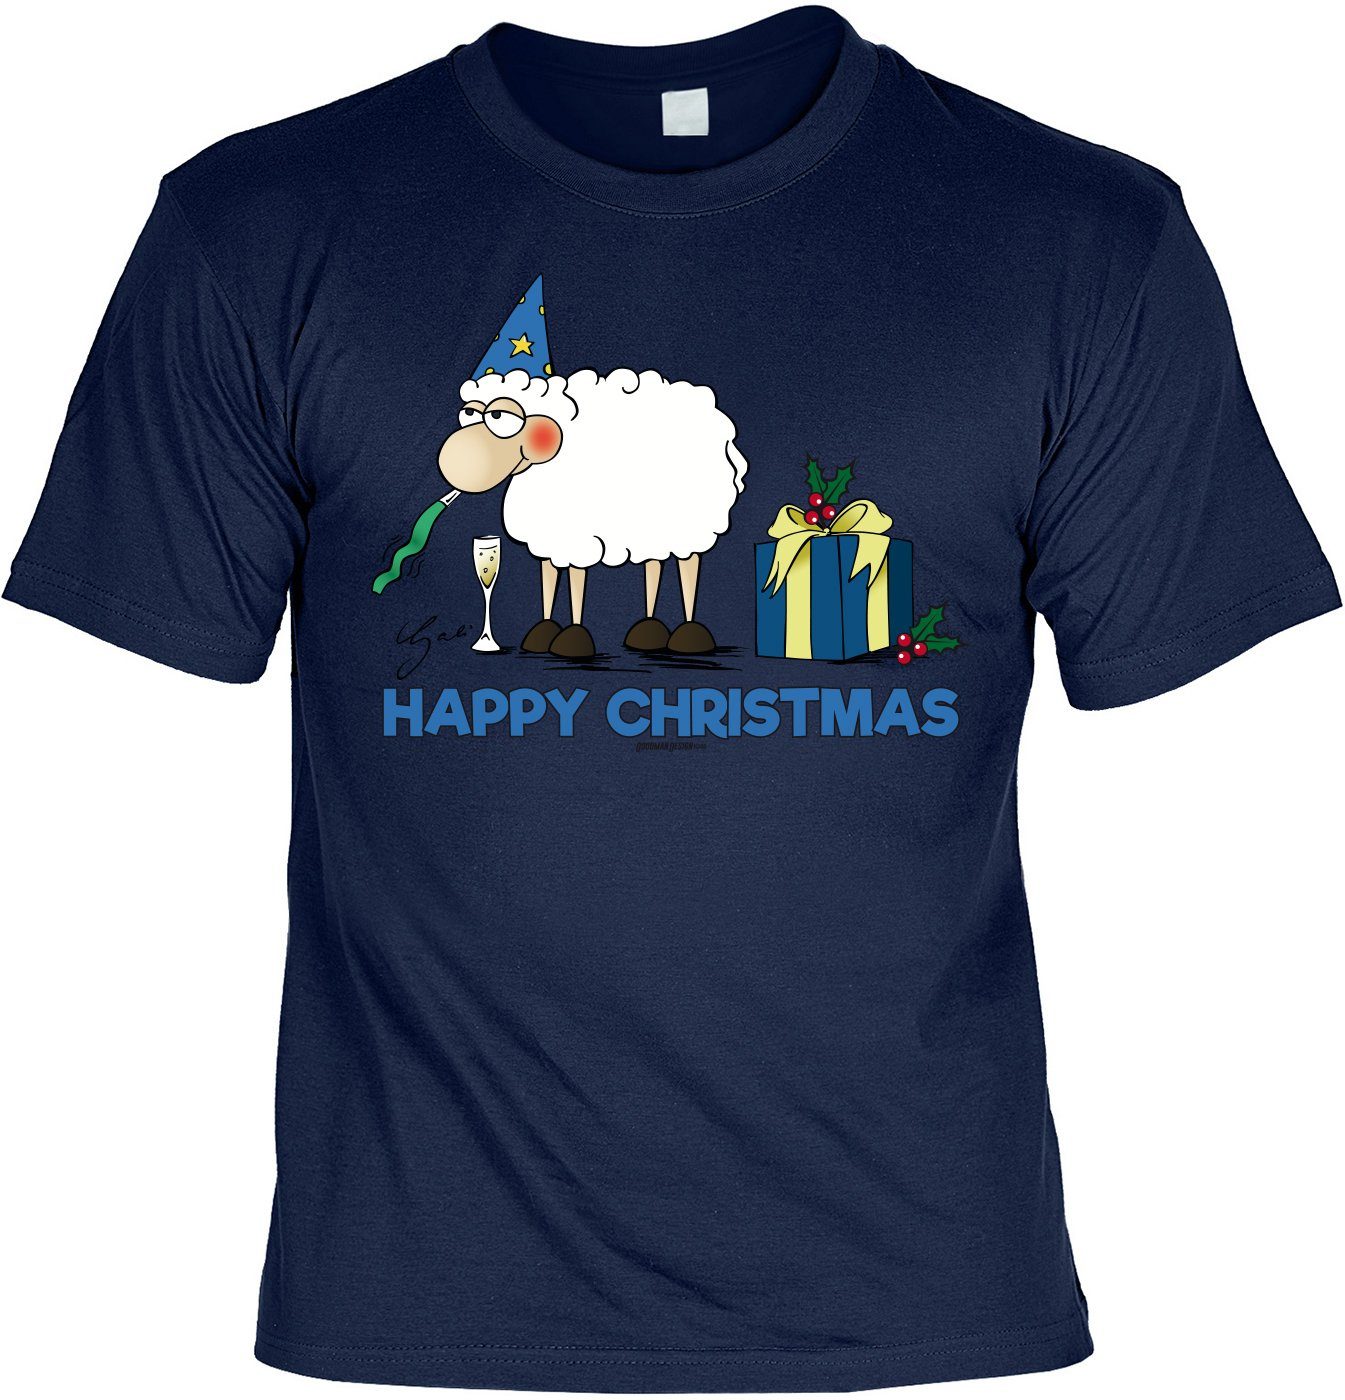 Weihnachten Advent Tini - Tshirt T-Shirt Weihnachtsfeier T-Shirt Happy Christmas Shirts Comic Weihnachten Schaf lustiges Schaf :